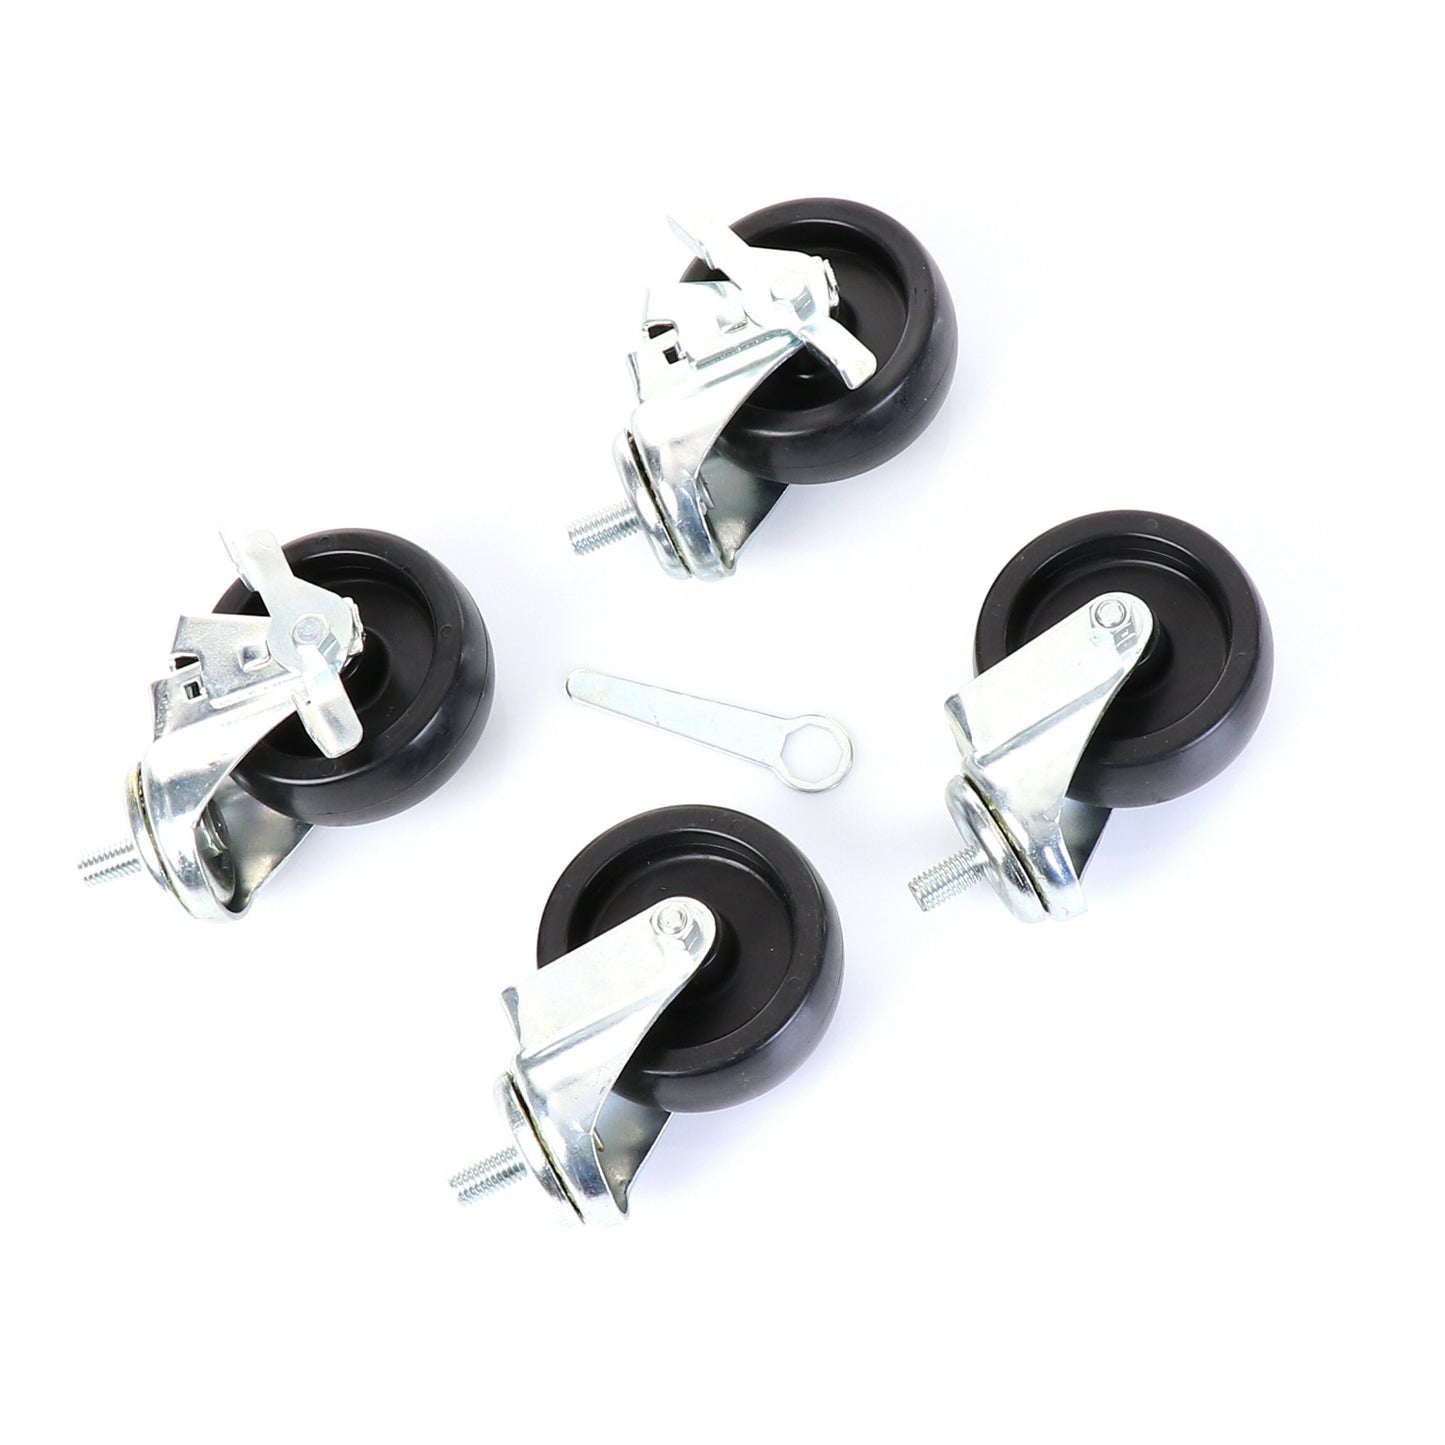 Castors, Set of 4, 4" Wheel Diameter(SKU - 830277)